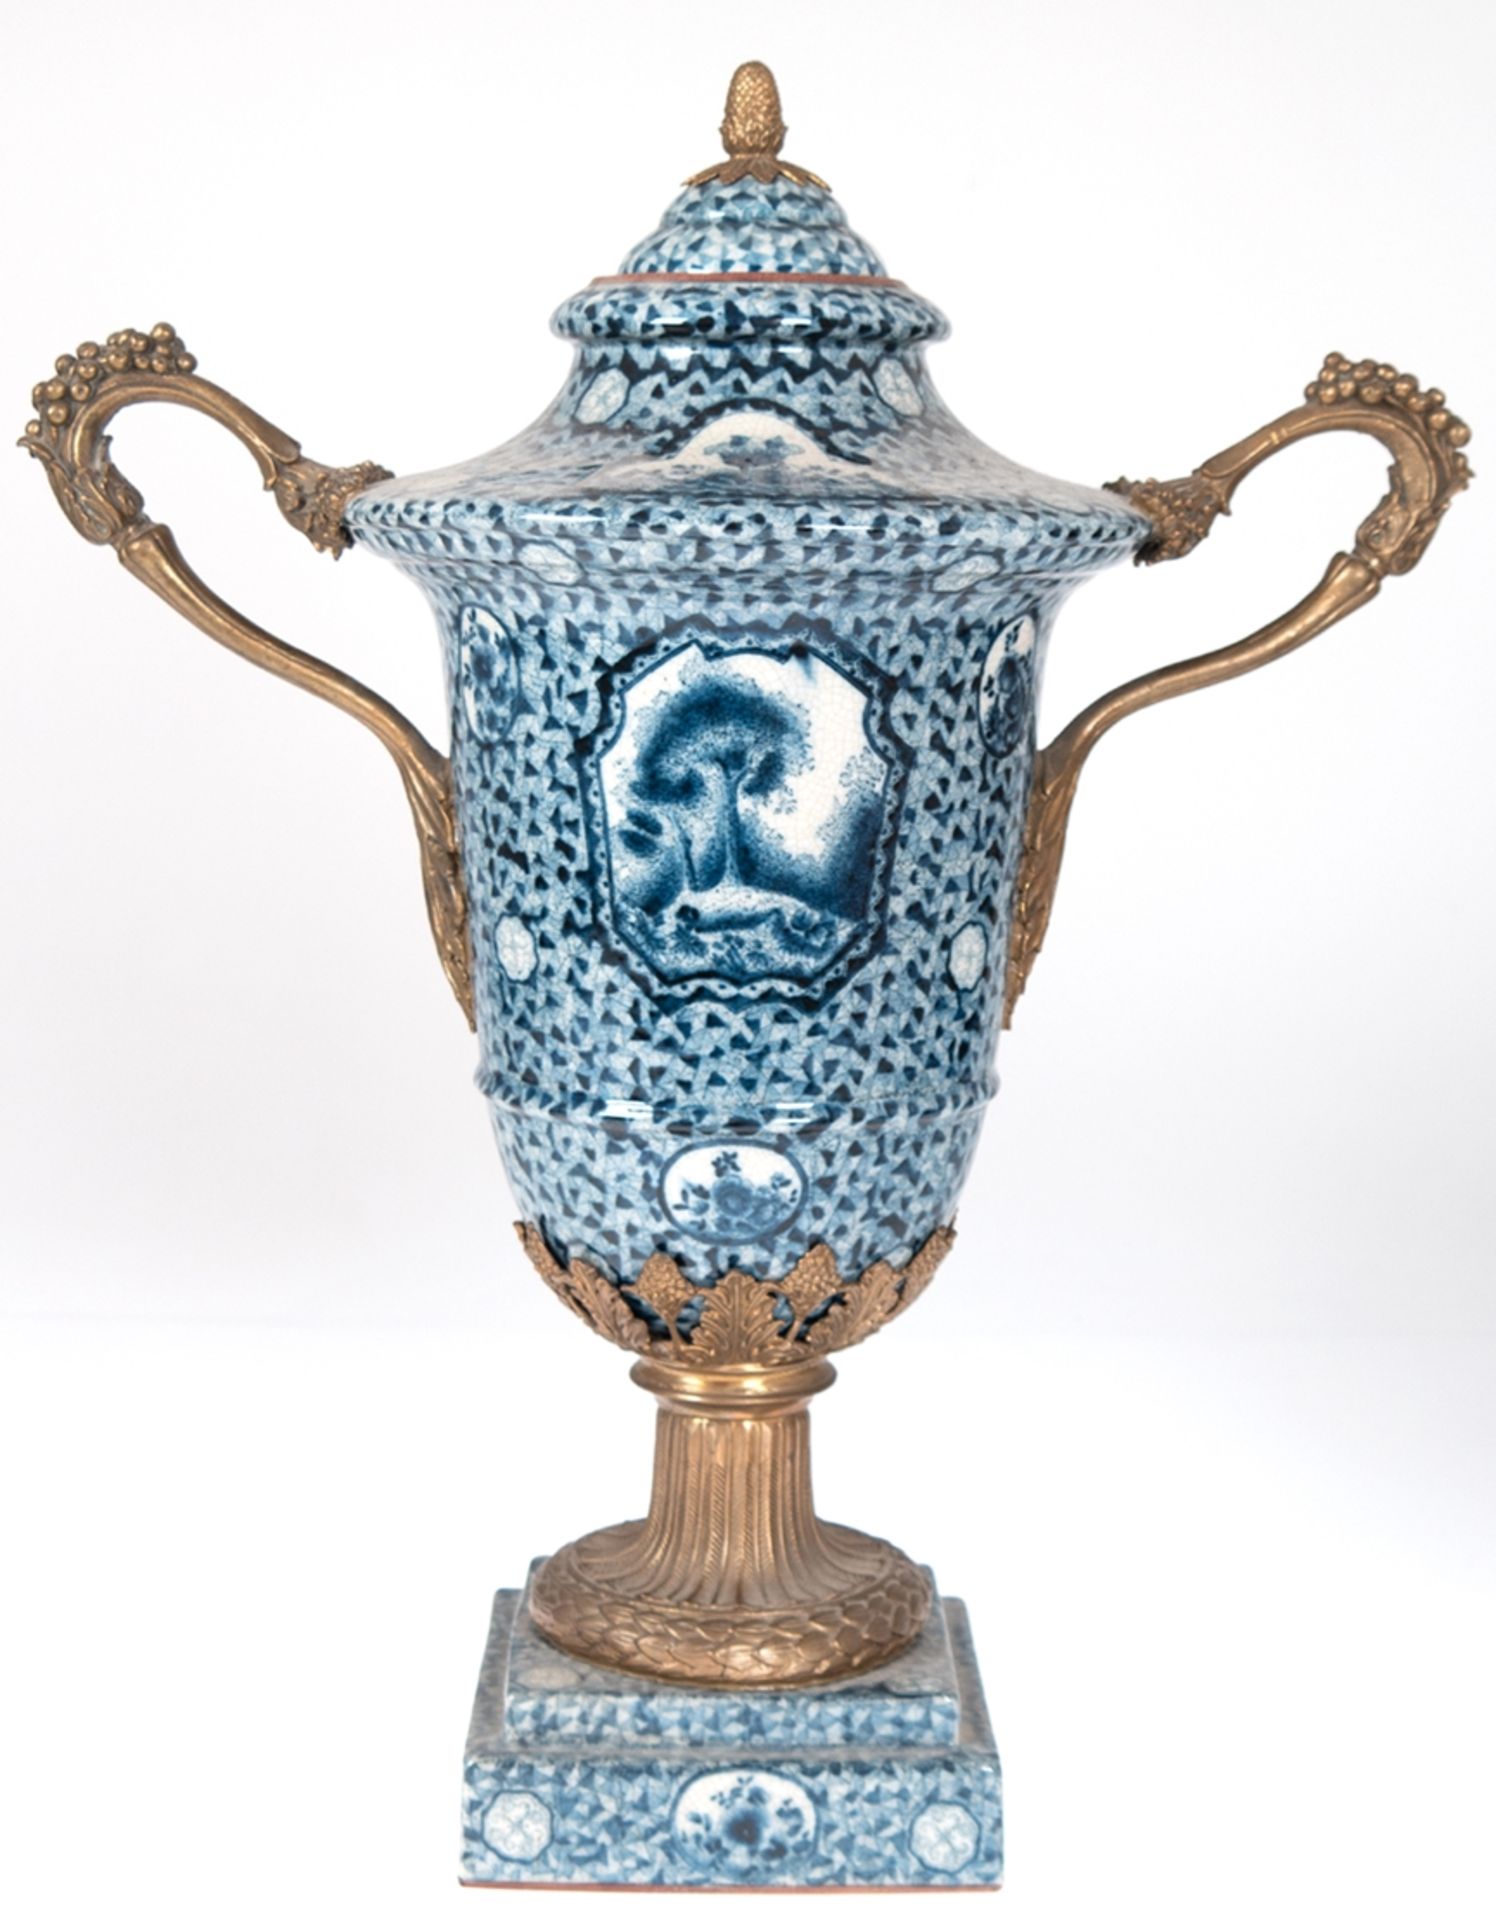 Deckel-Vase, Keramik mit Bronzebesatz, vollflächiger Blaudekor, auf quadratischem Sockel reliefiert